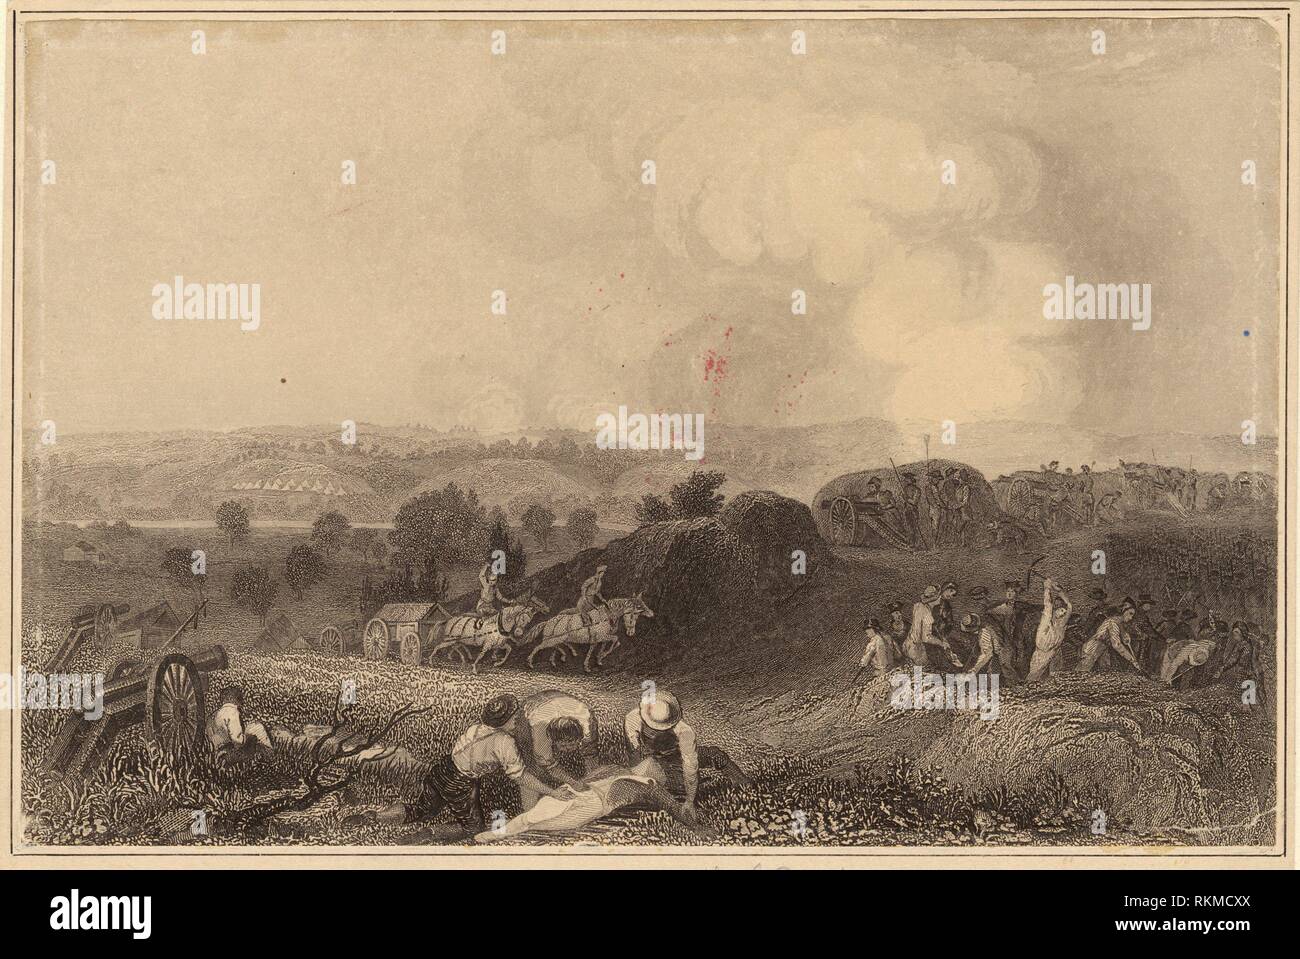 Schlacht von Saratoga. Mid-Manhattan Bildersammlung der amerikanischen Geschichte - 1777. Datum: Undatiert. United States - Geschichte - Revolution, 1775-1783 Stockfoto